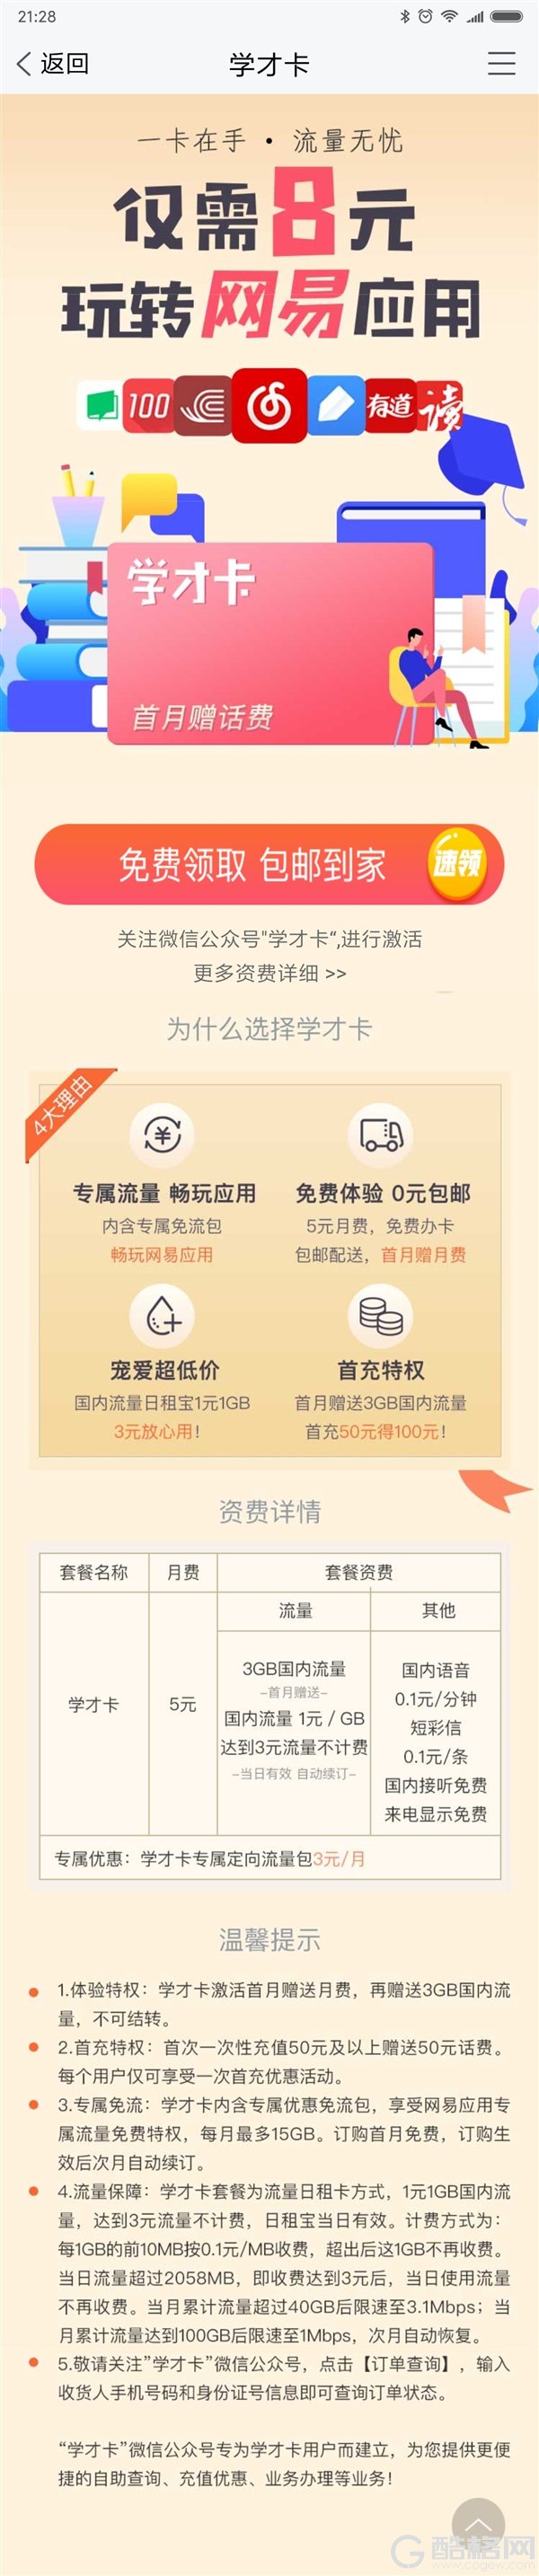 中国联通学才卡套餐上线：8元可玩转网易应用